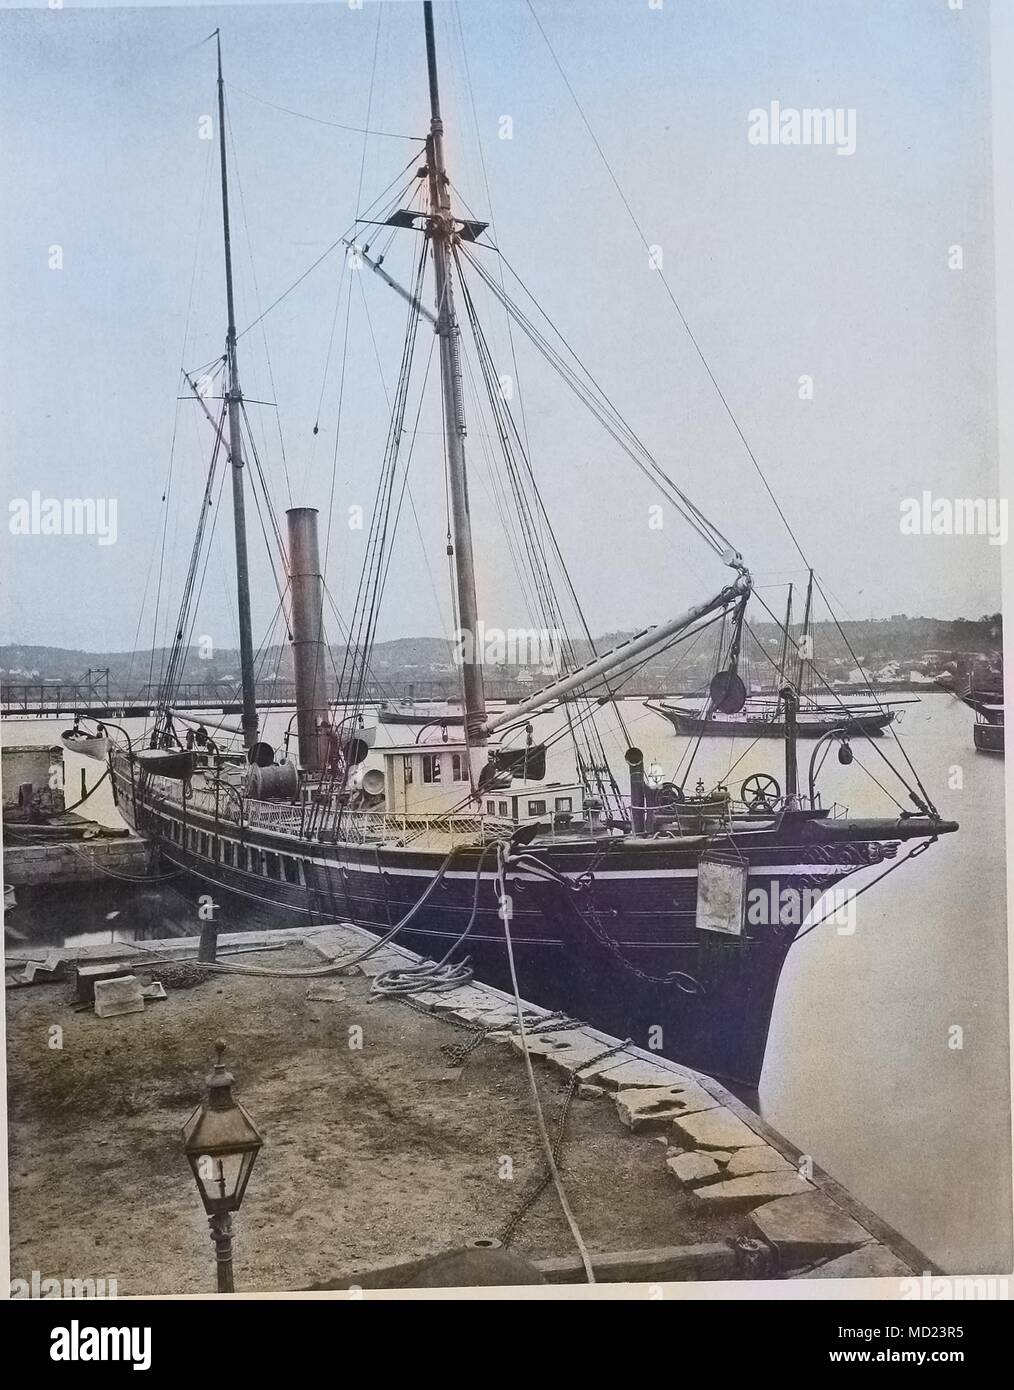 Heliotype imprimer de la drague USS Blake à Washington Navy Yard, New York City, New York, 1877. Remarque : l'image a été colorisée numériquement à l'aide d'un processus moderne. Les couleurs peuvent ne pas être exacts à l'autre. () Banque D'Images